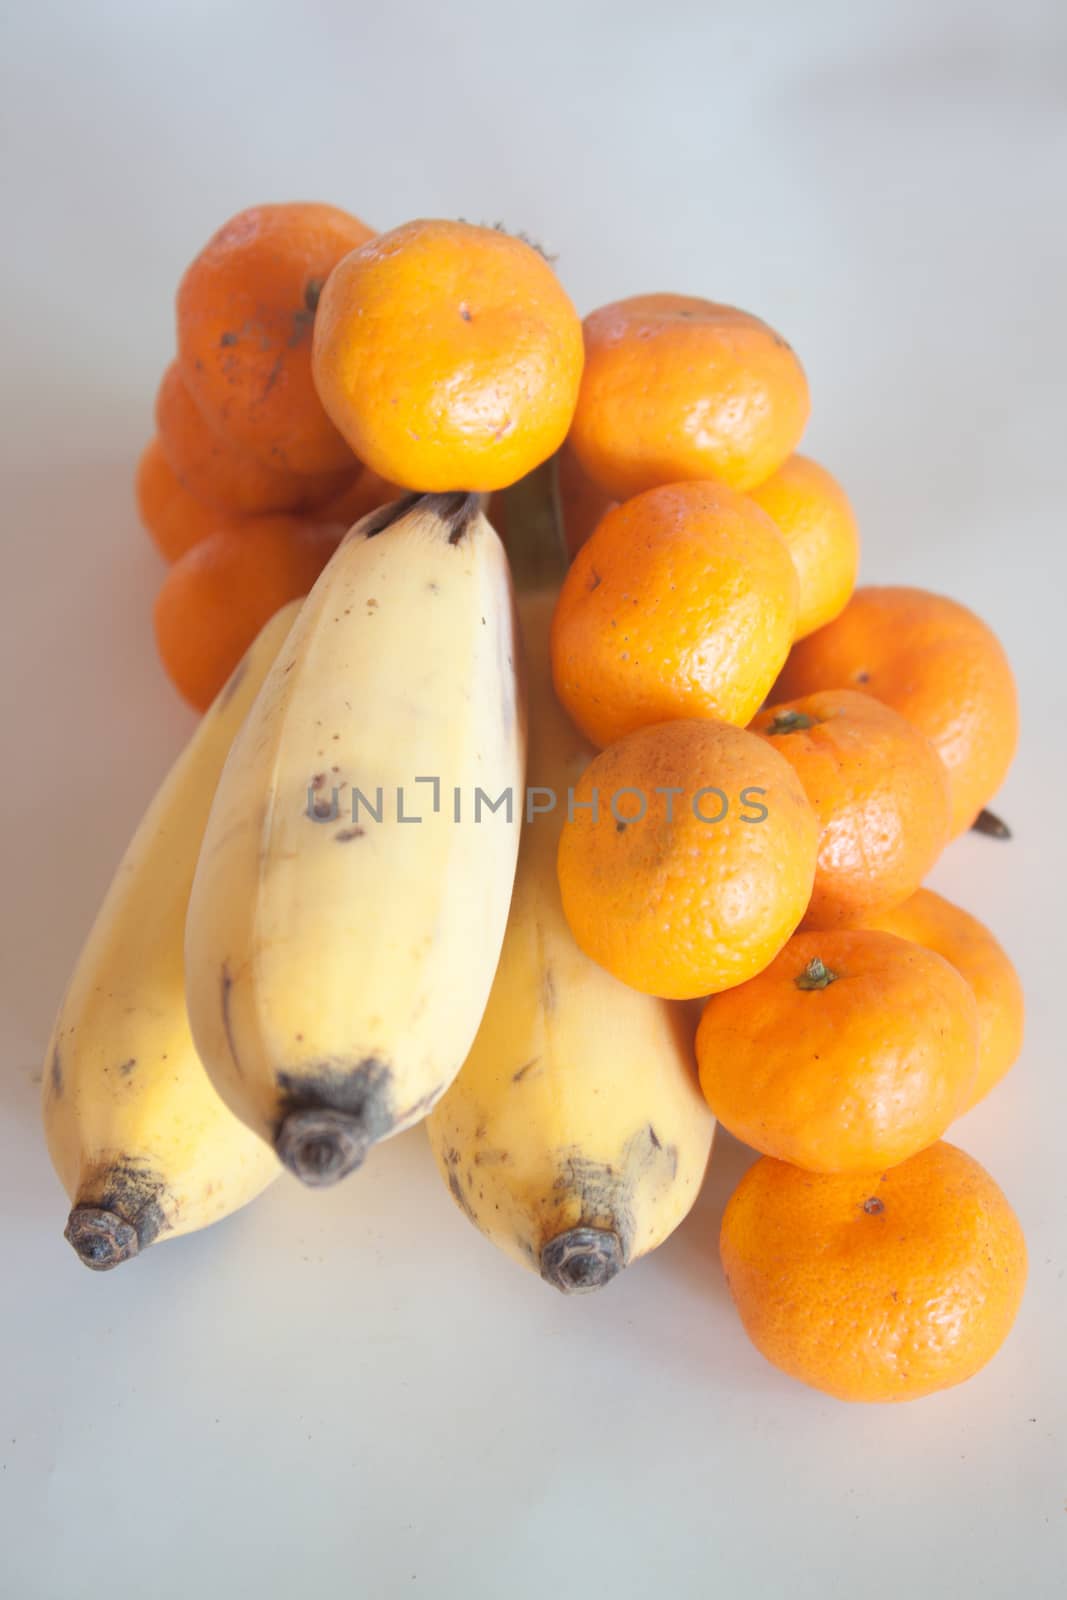 fresh orange and banana isolated on a white background